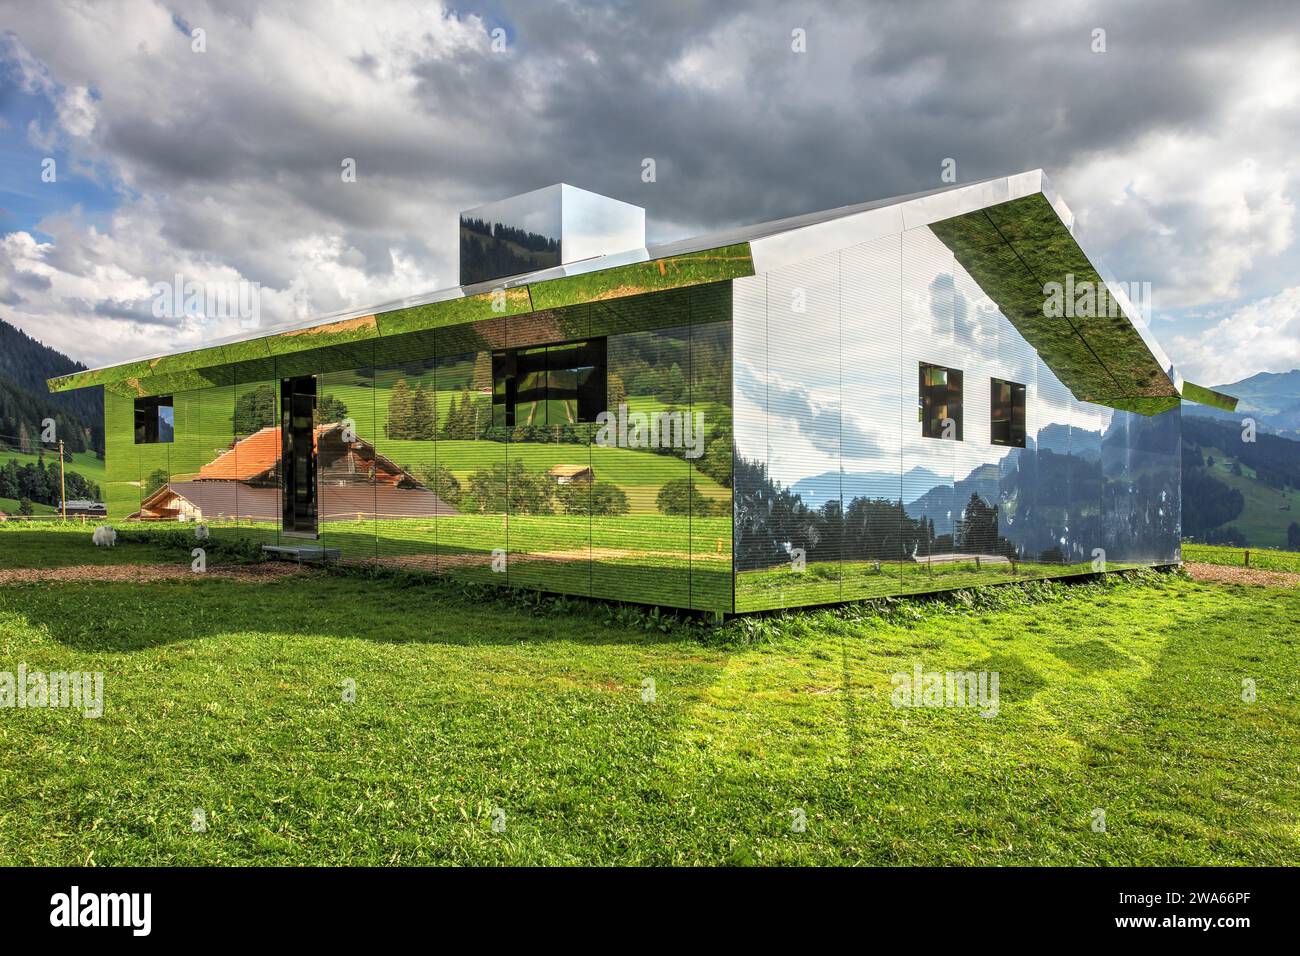 Instalation artistique temporaire (2020) de Doug Aitken, Mirage se compose d'une maison de miroirs sur un sentier de randonnée entre Schönried et Gstaad, Suisse repr Banque D'Images